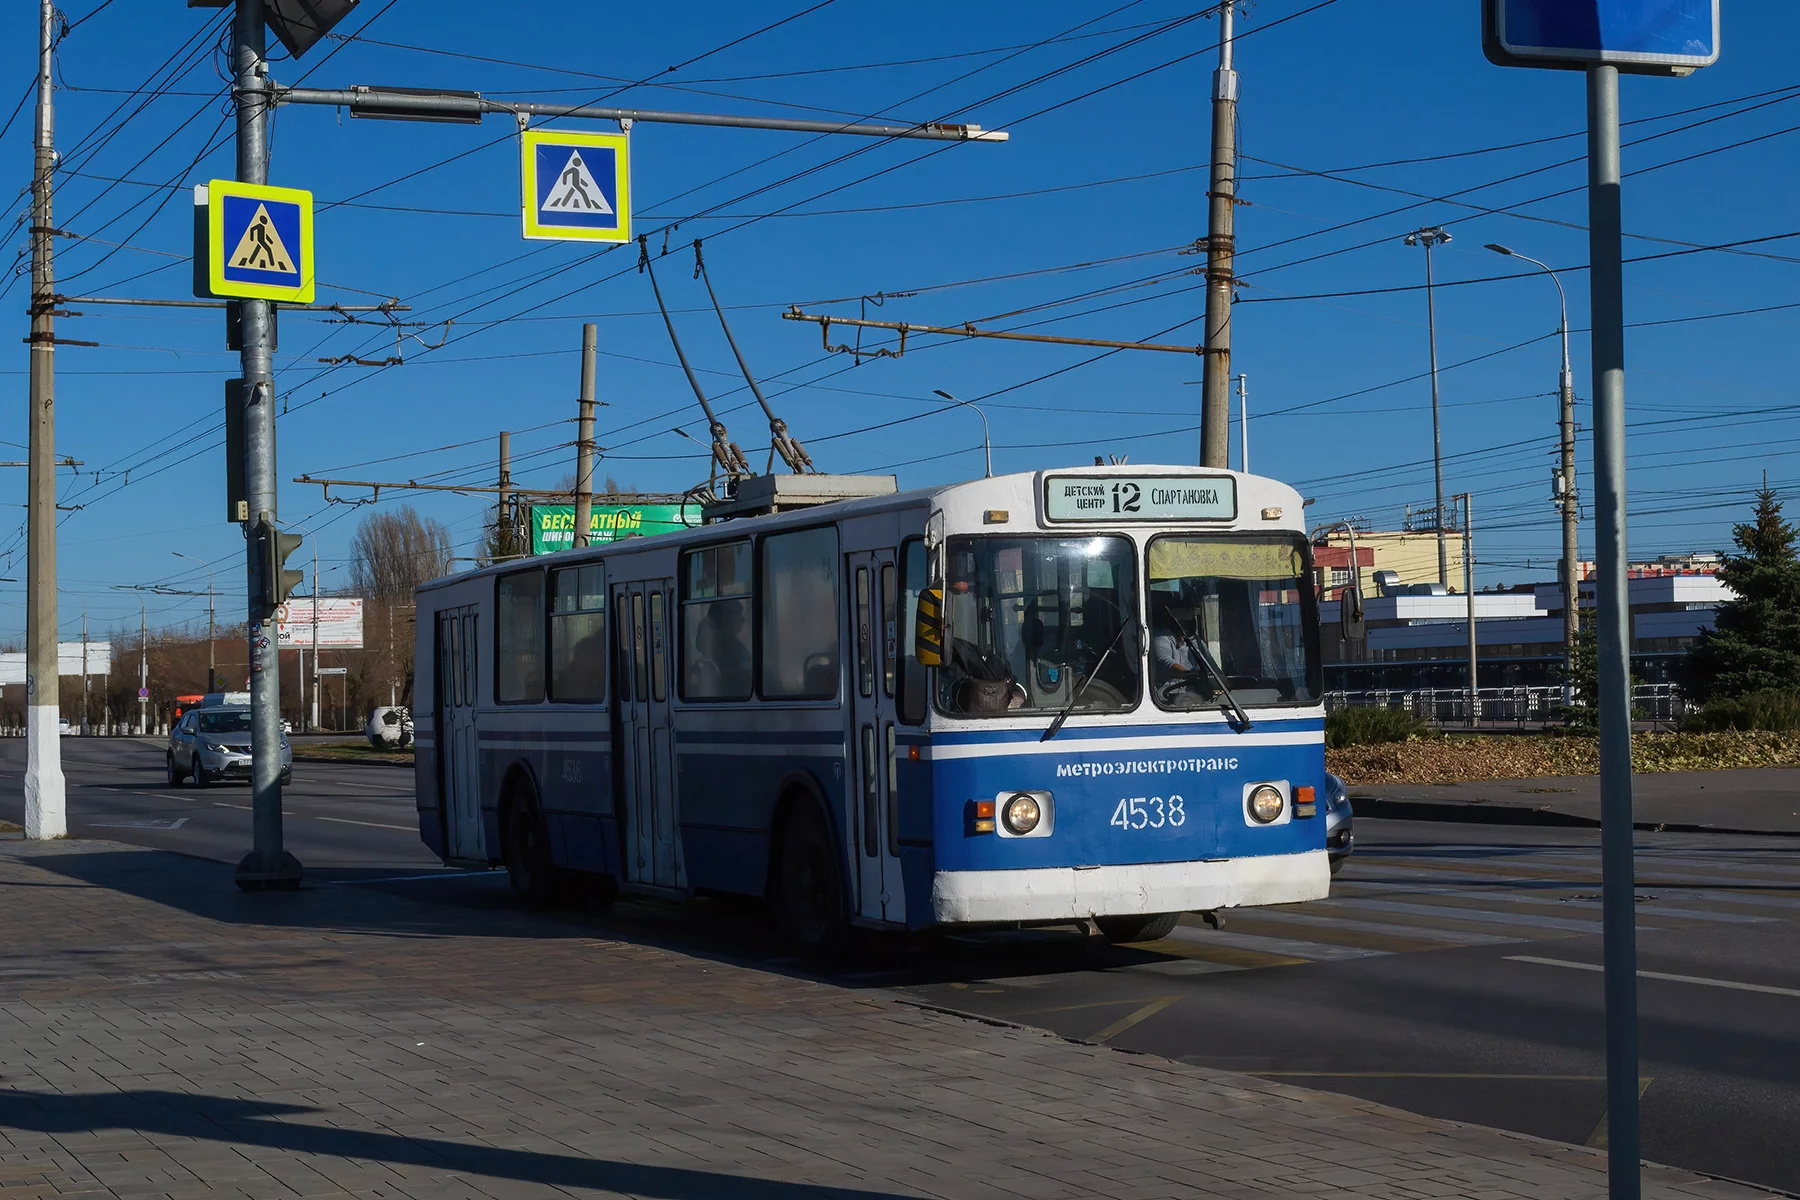 A trolleybus in Volgograd